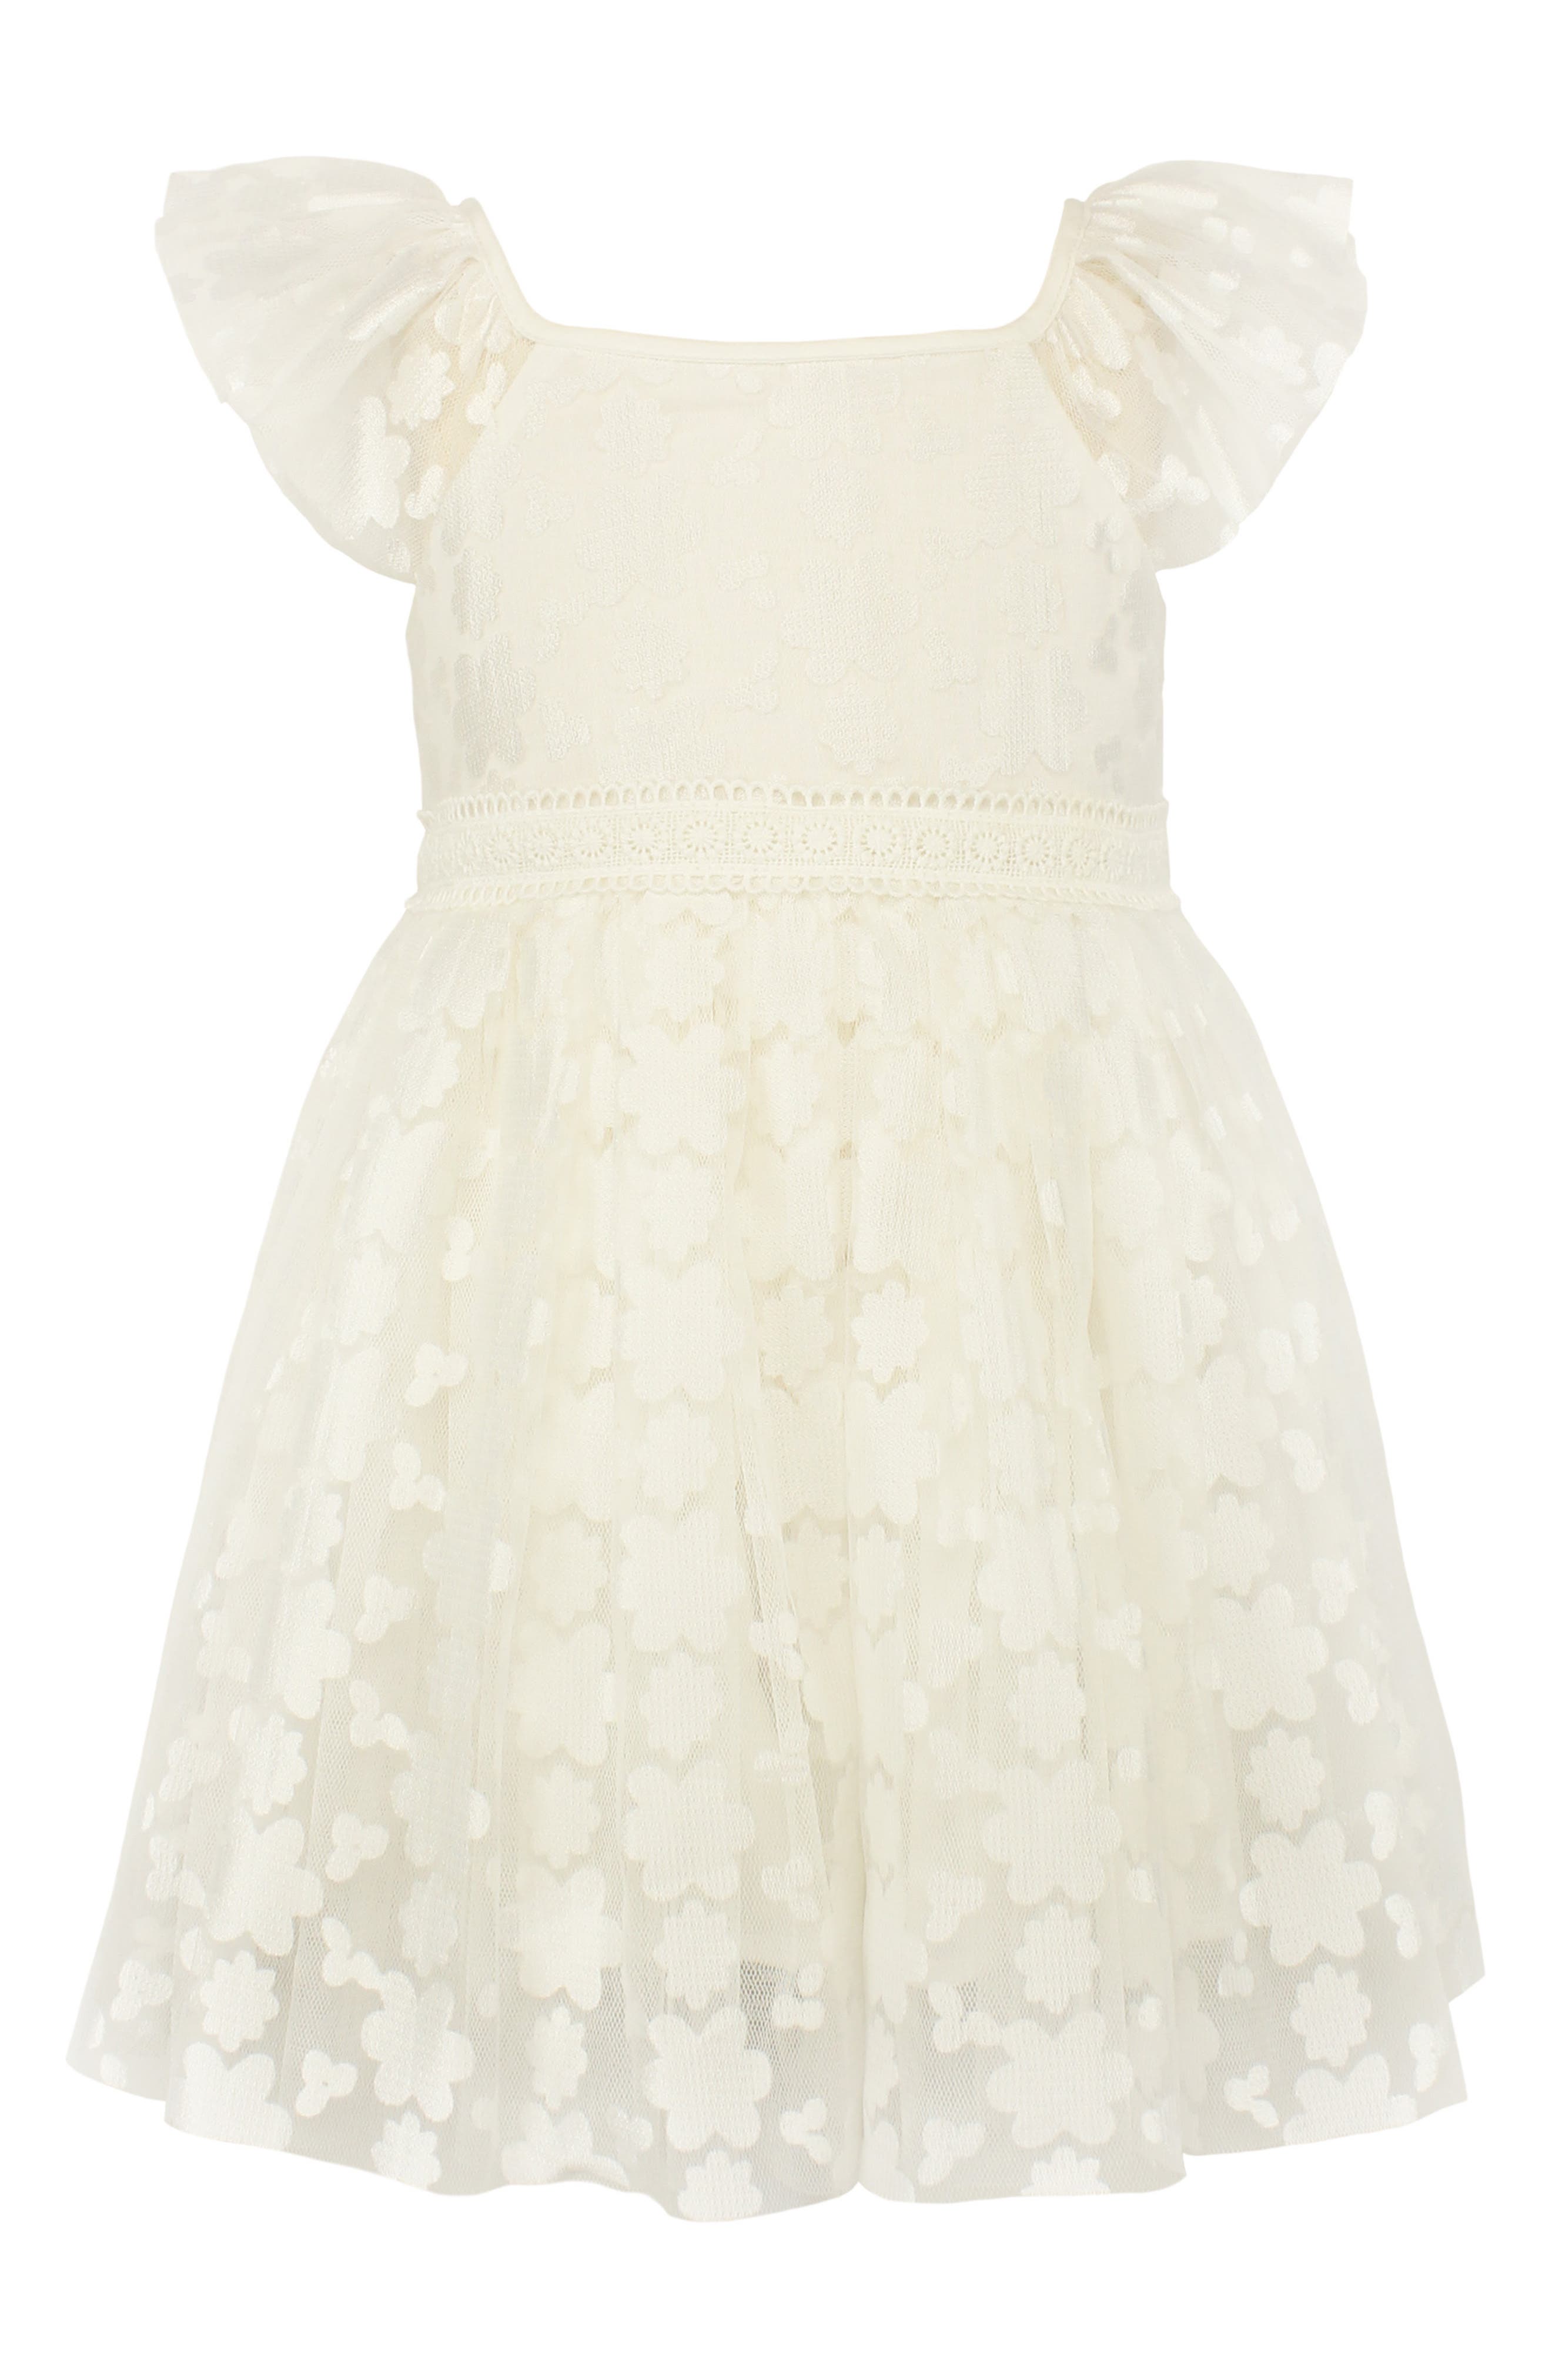 White Toddler Dress 3t